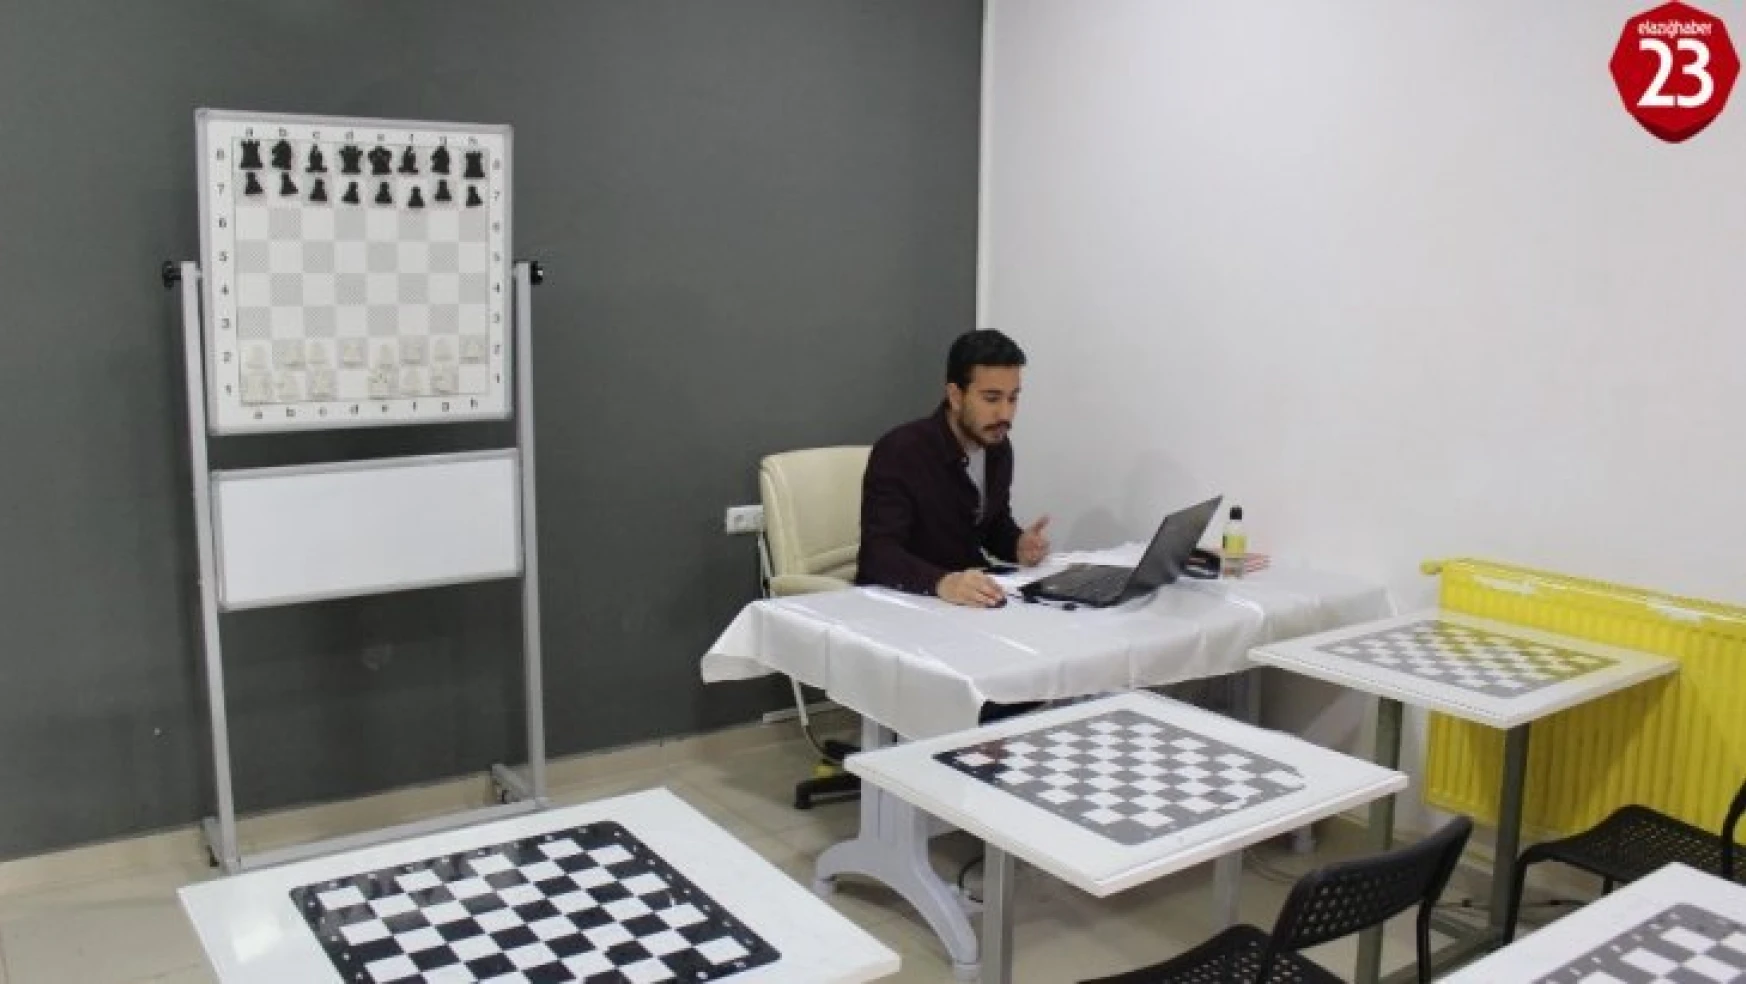 Evden çıkamayan çocuklara online satranç eğitimi